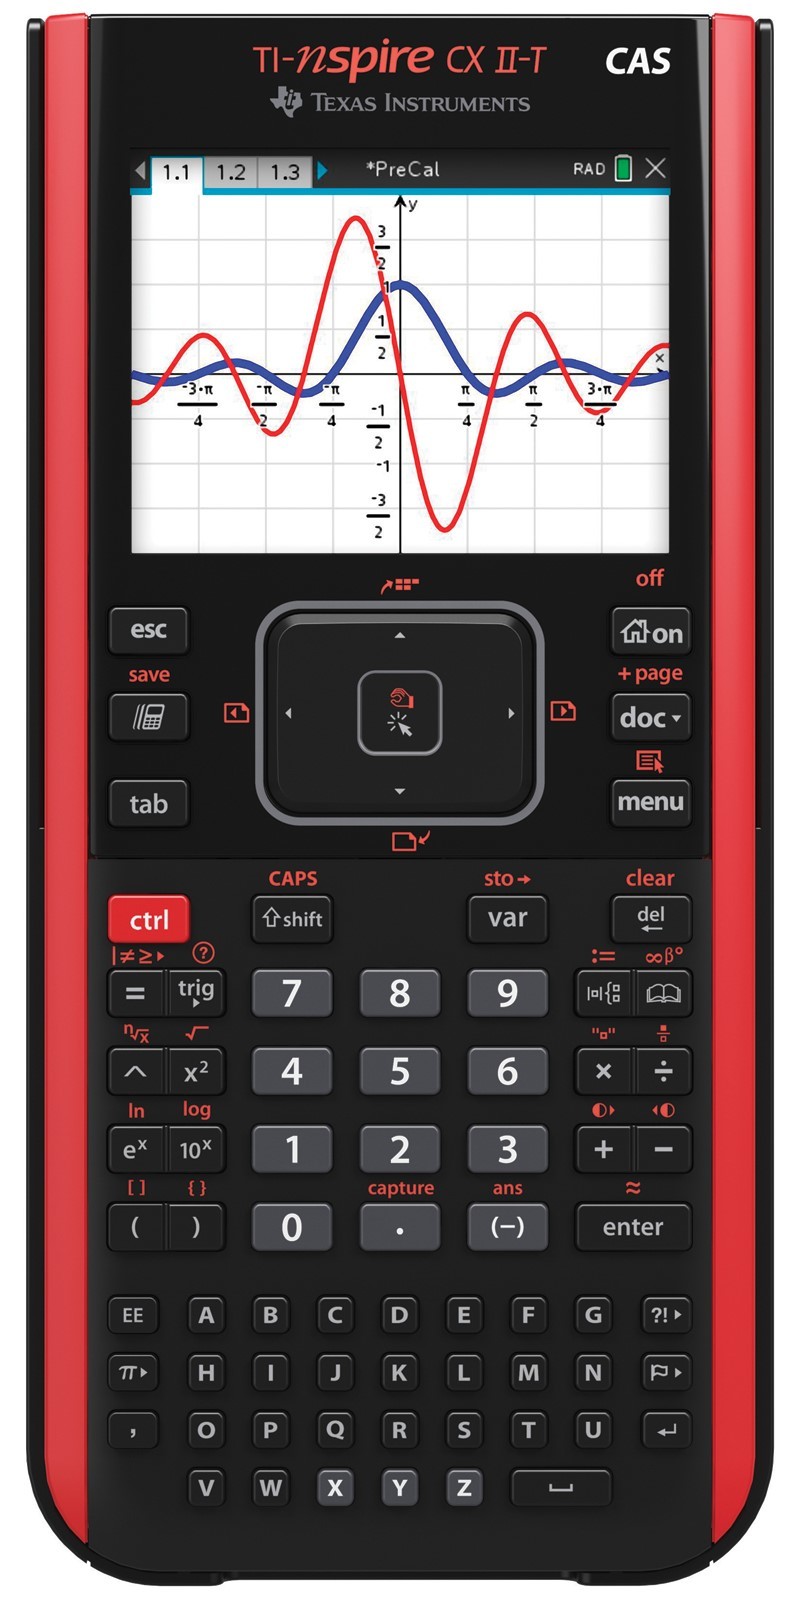 TI-Nspire CX II-T CAS calculatrice graphique 